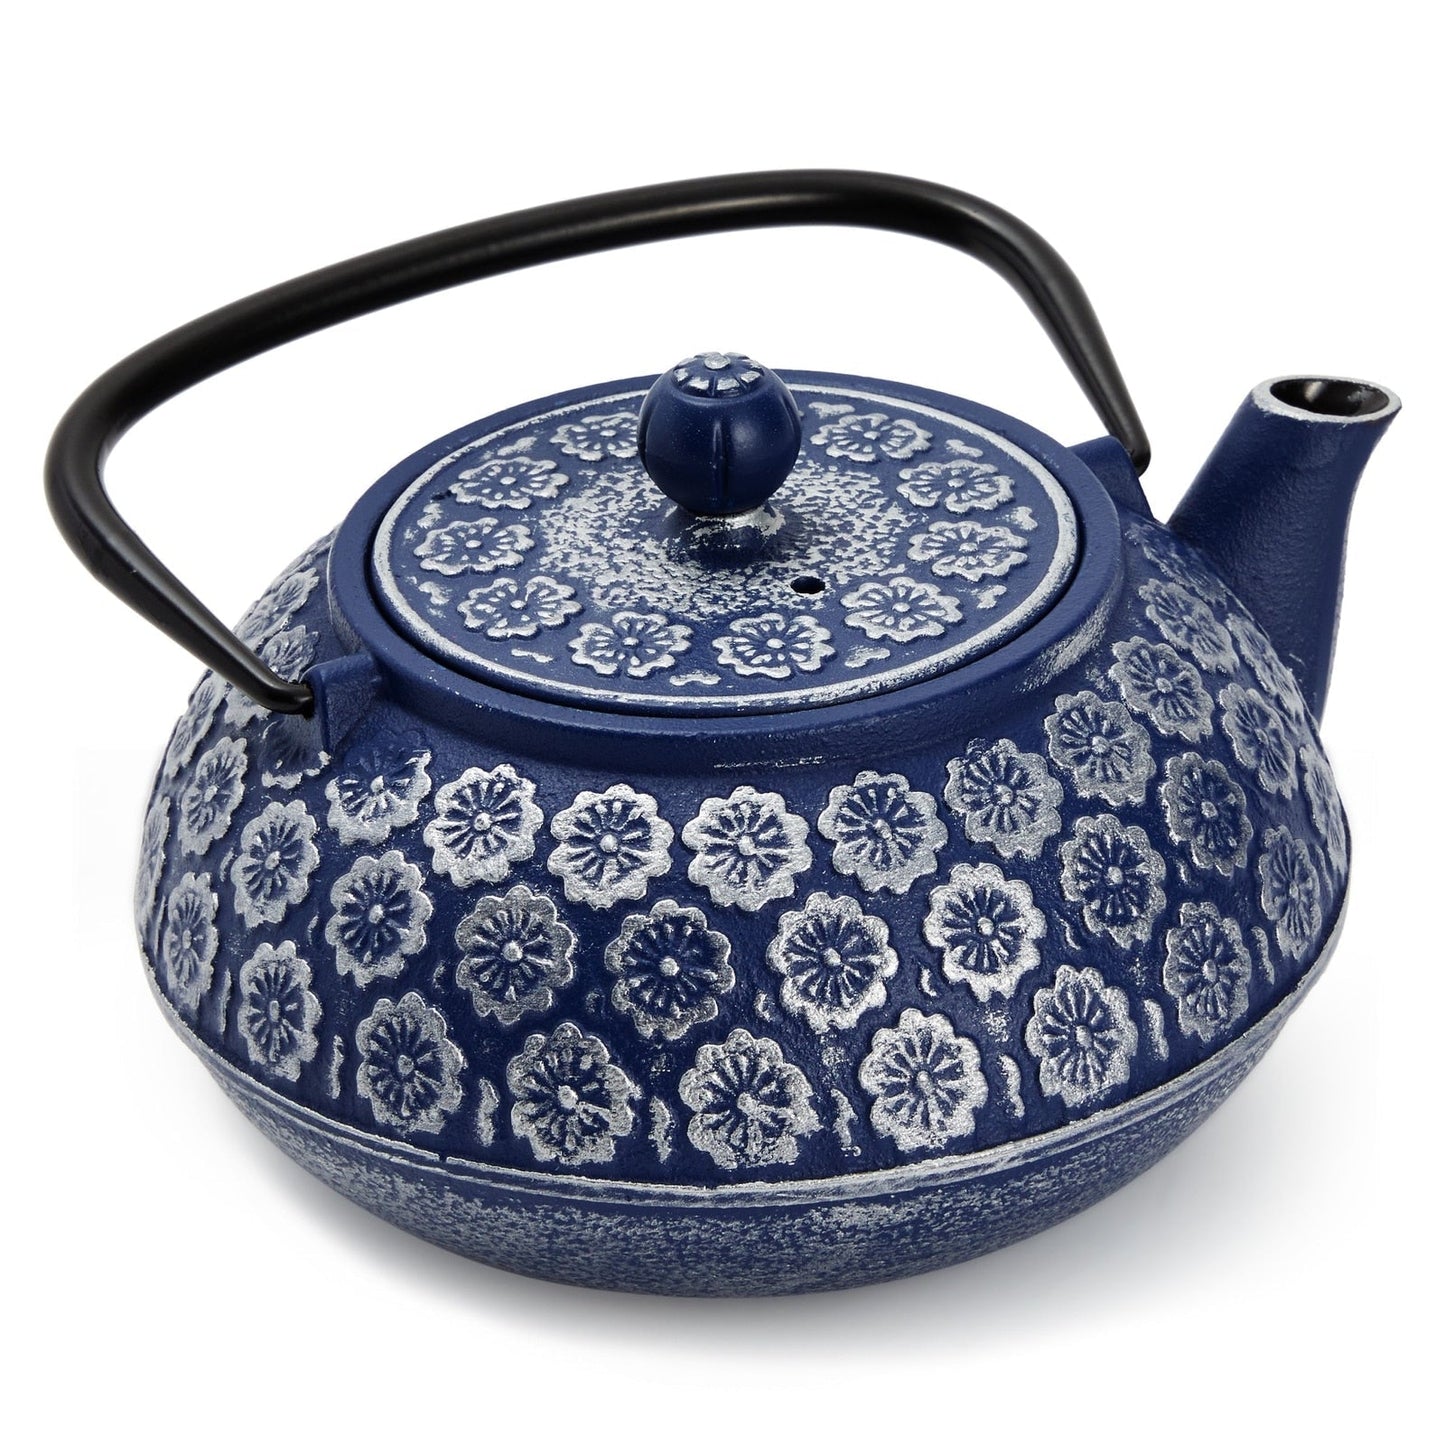 إبريق شاي صيني من الحديد الزهر الأزرق مع مصفاة للشاي بأوراق فضفاضة، يتضمن مقبض وغطاء قابل للإزالة، 34oz